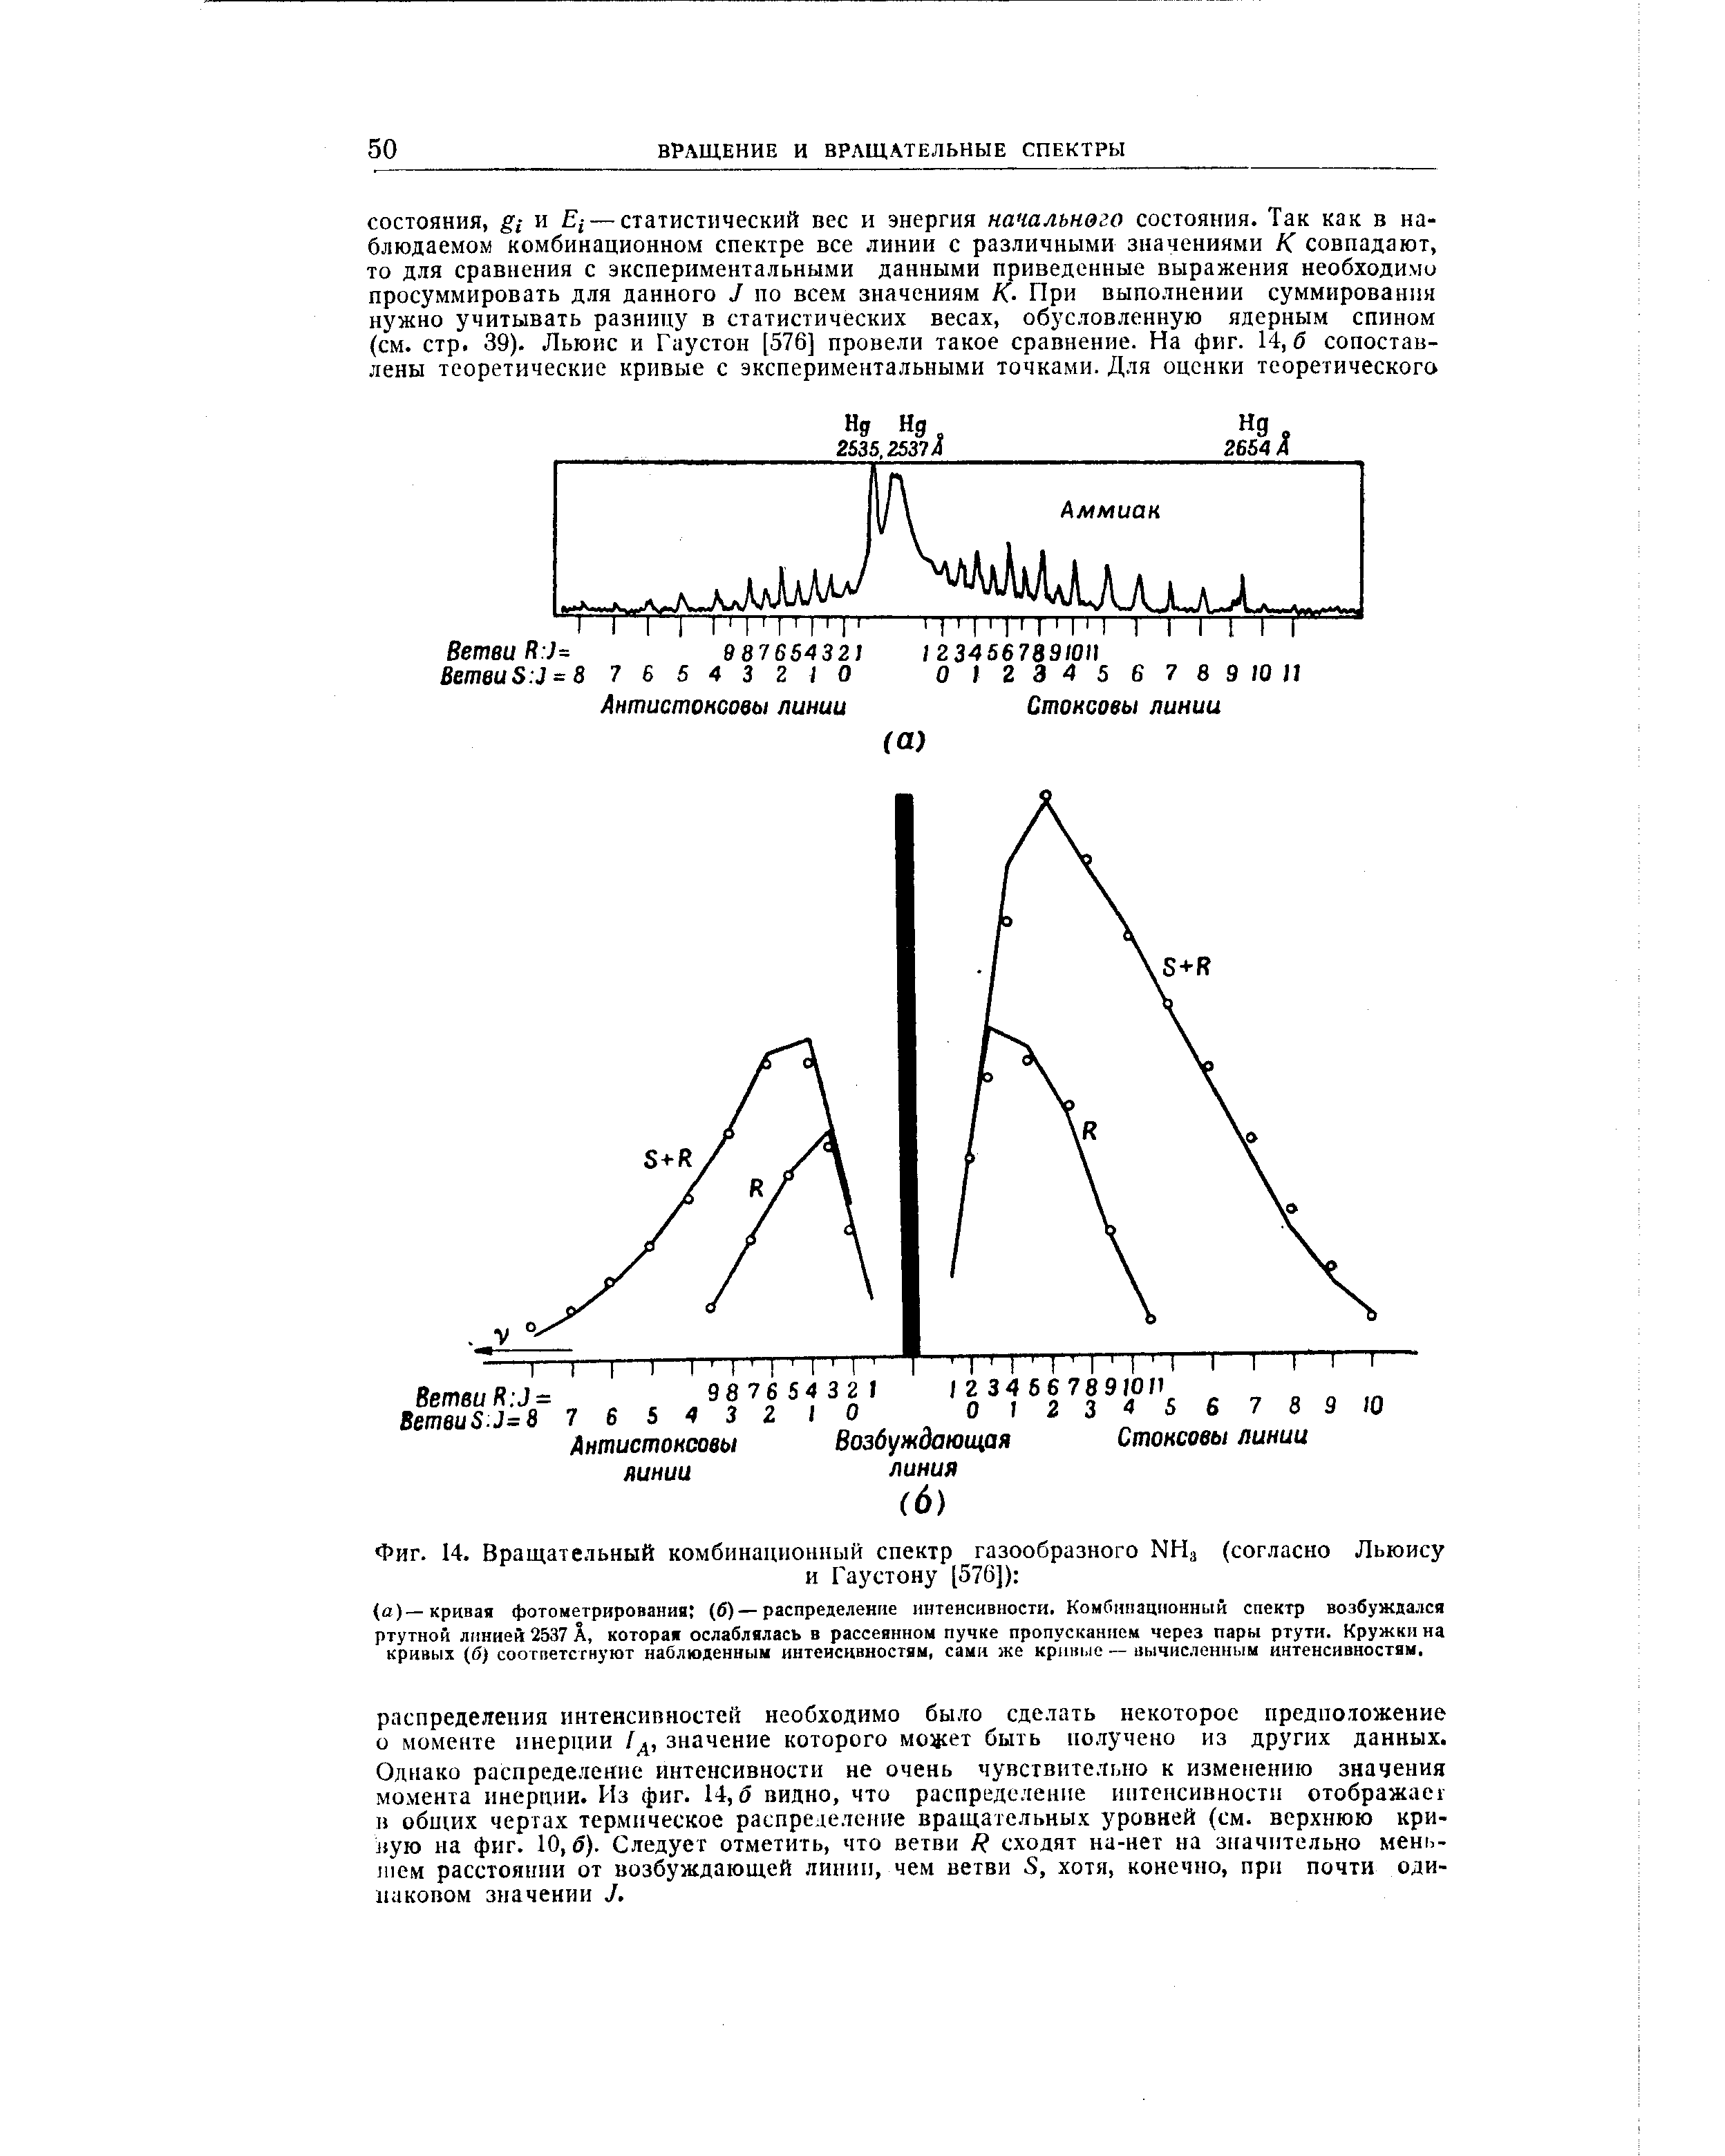 Фиг. 14. Вращательный комбинационный спектр газообразного КН (согласно Льюису
